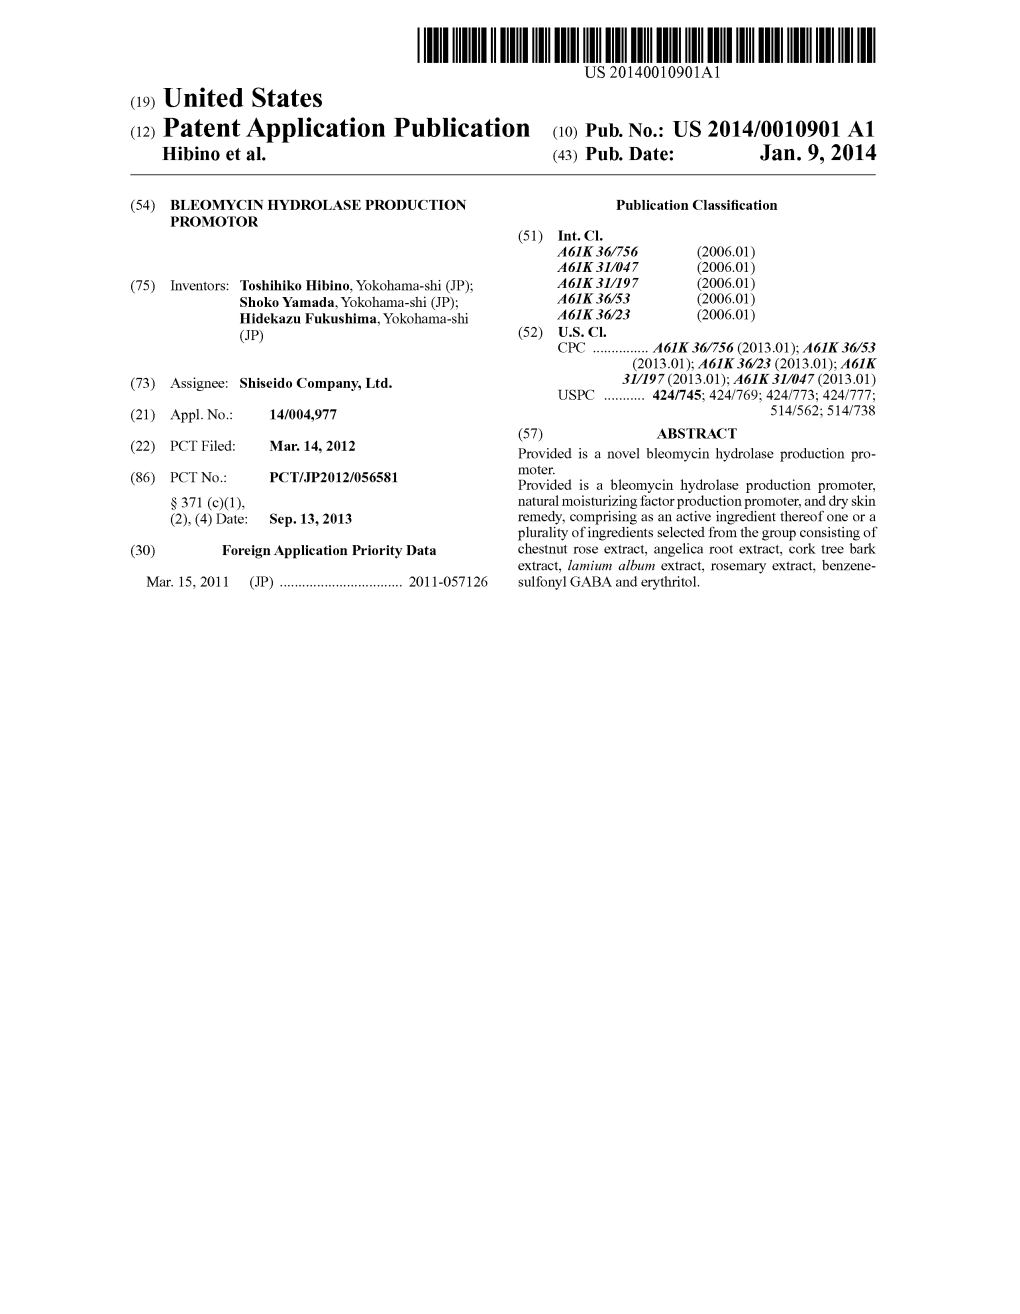 (12) Patent Application Publication (10) Pub. No.: US 2014/0010901 A1 Hibino Et Al